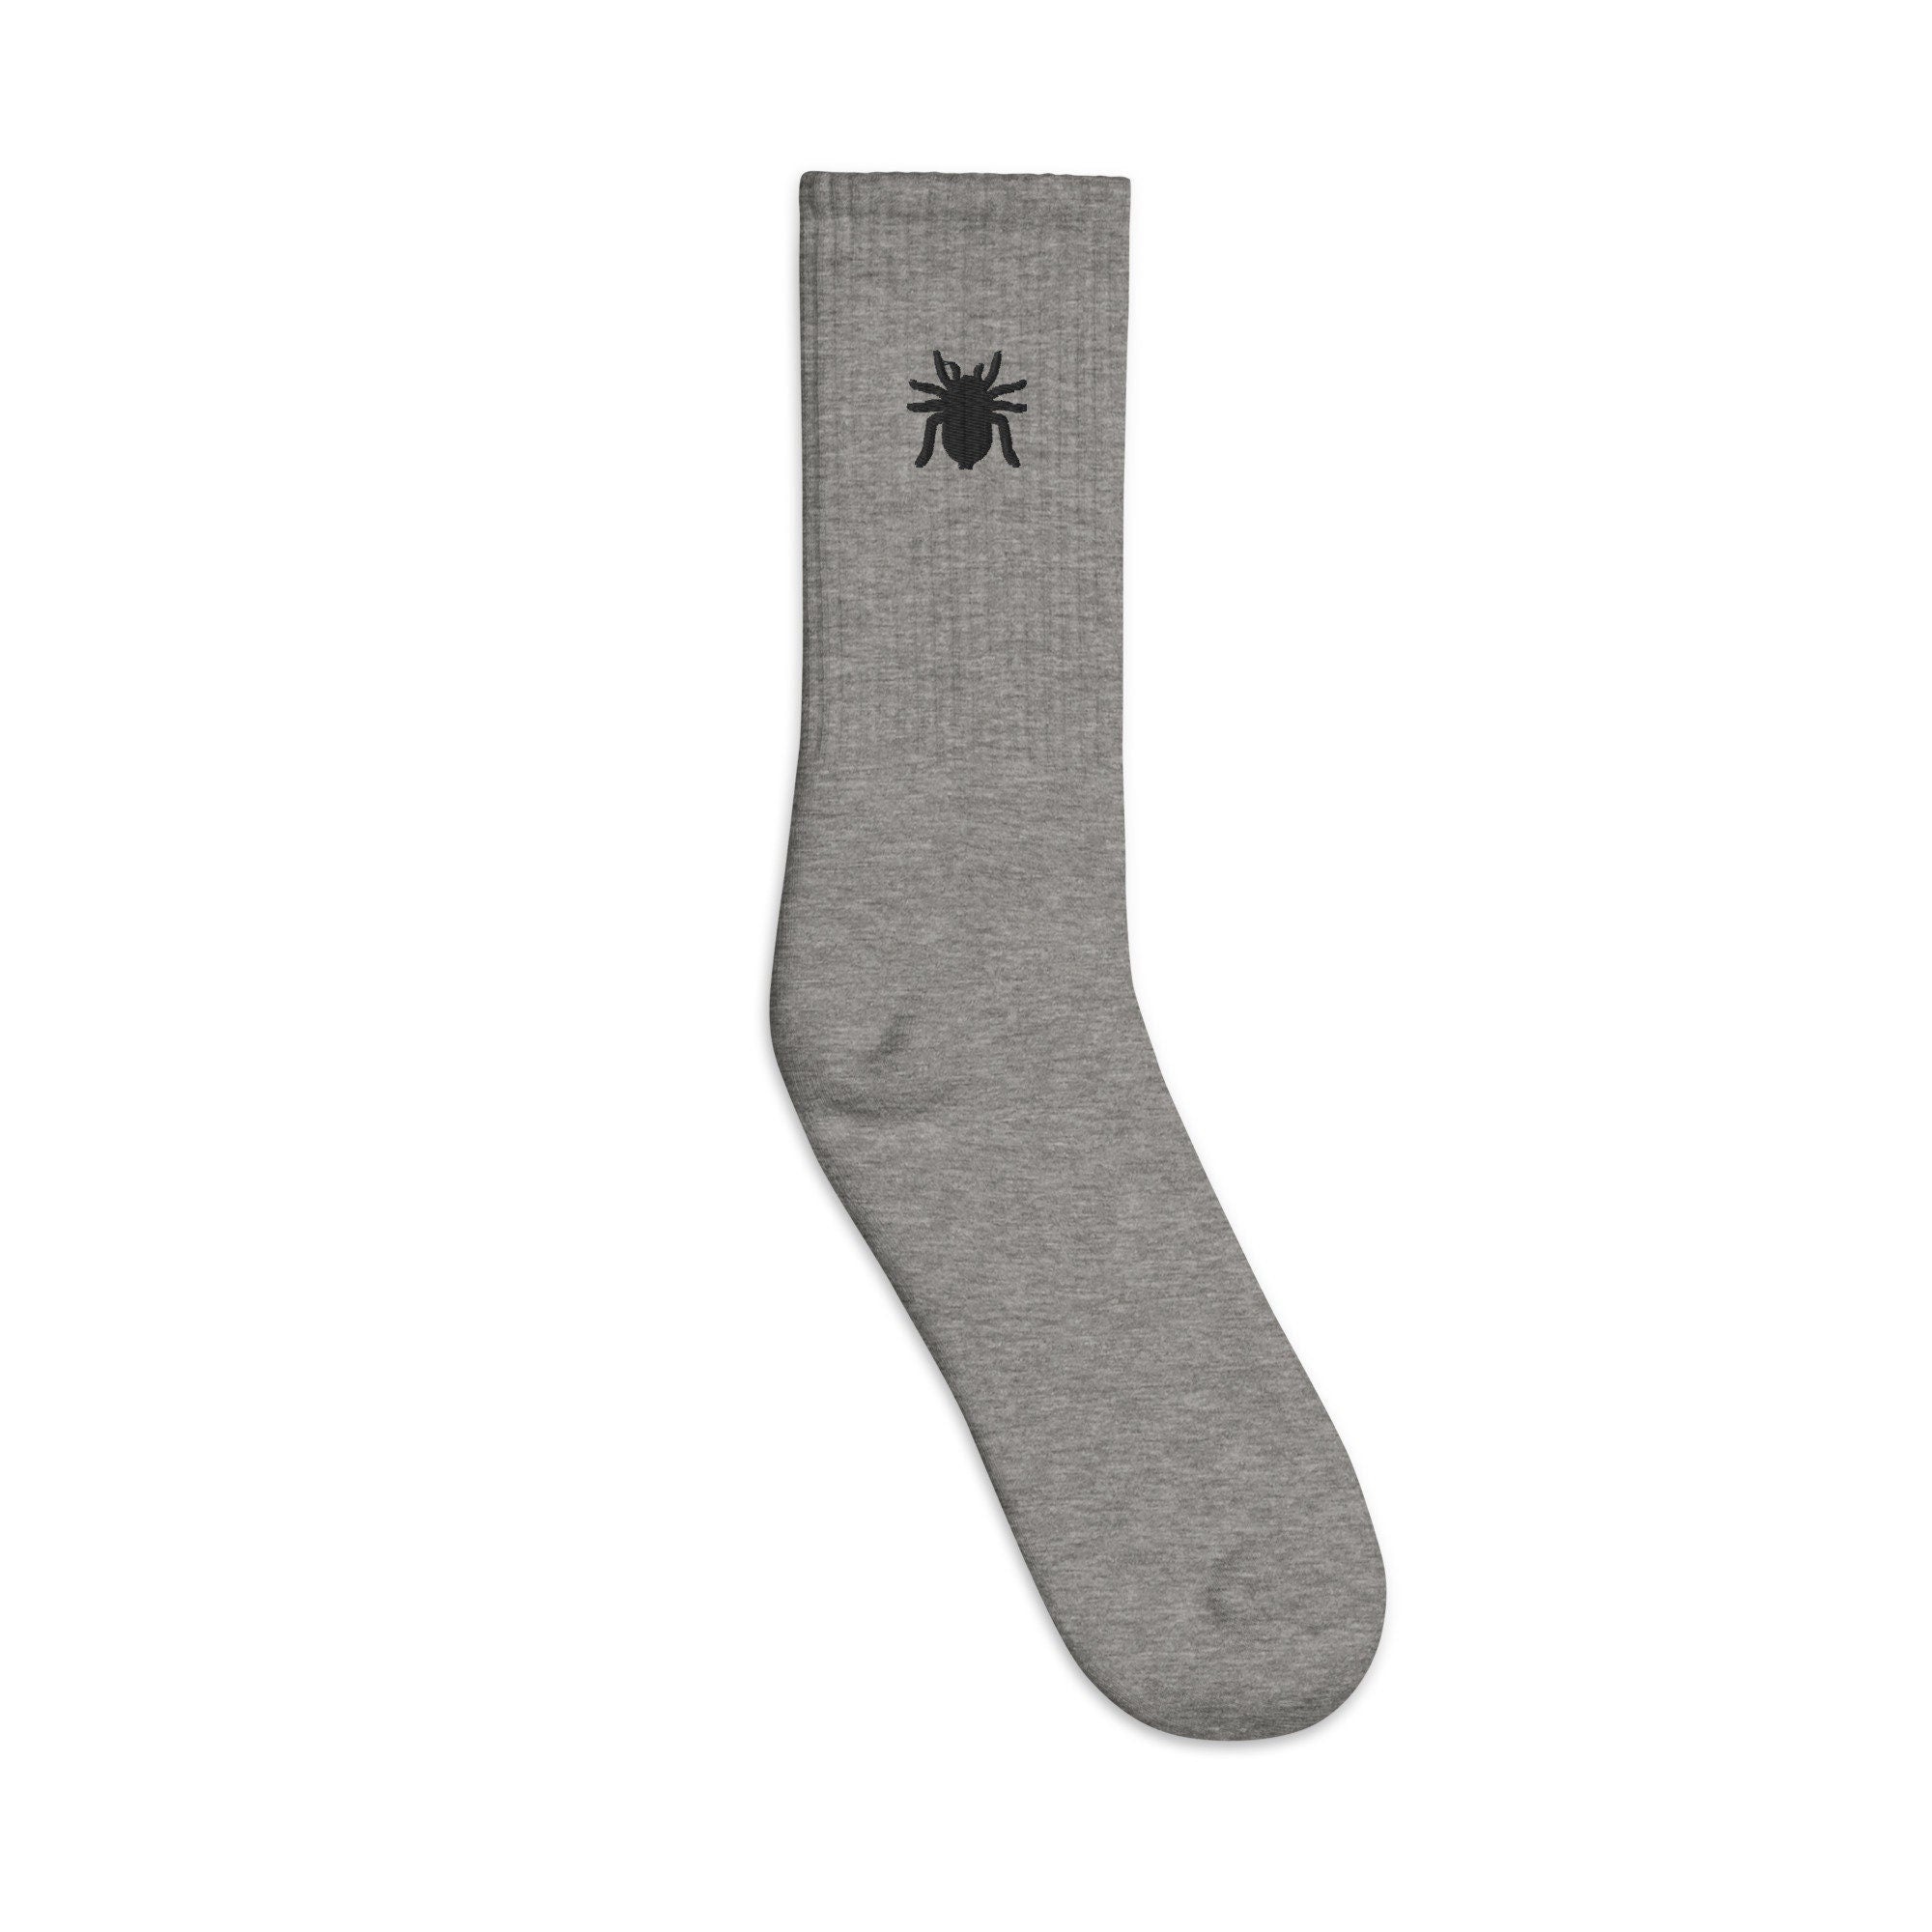 Tarantula Embroidered Socks, Premium Embroidered Socks, Long Socks Gift - Multiple Colors